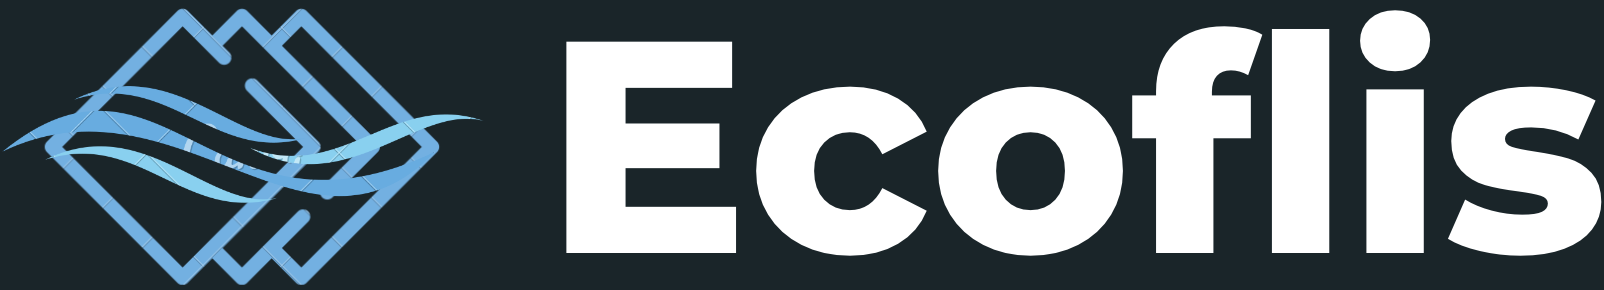 ecoflis footer logo